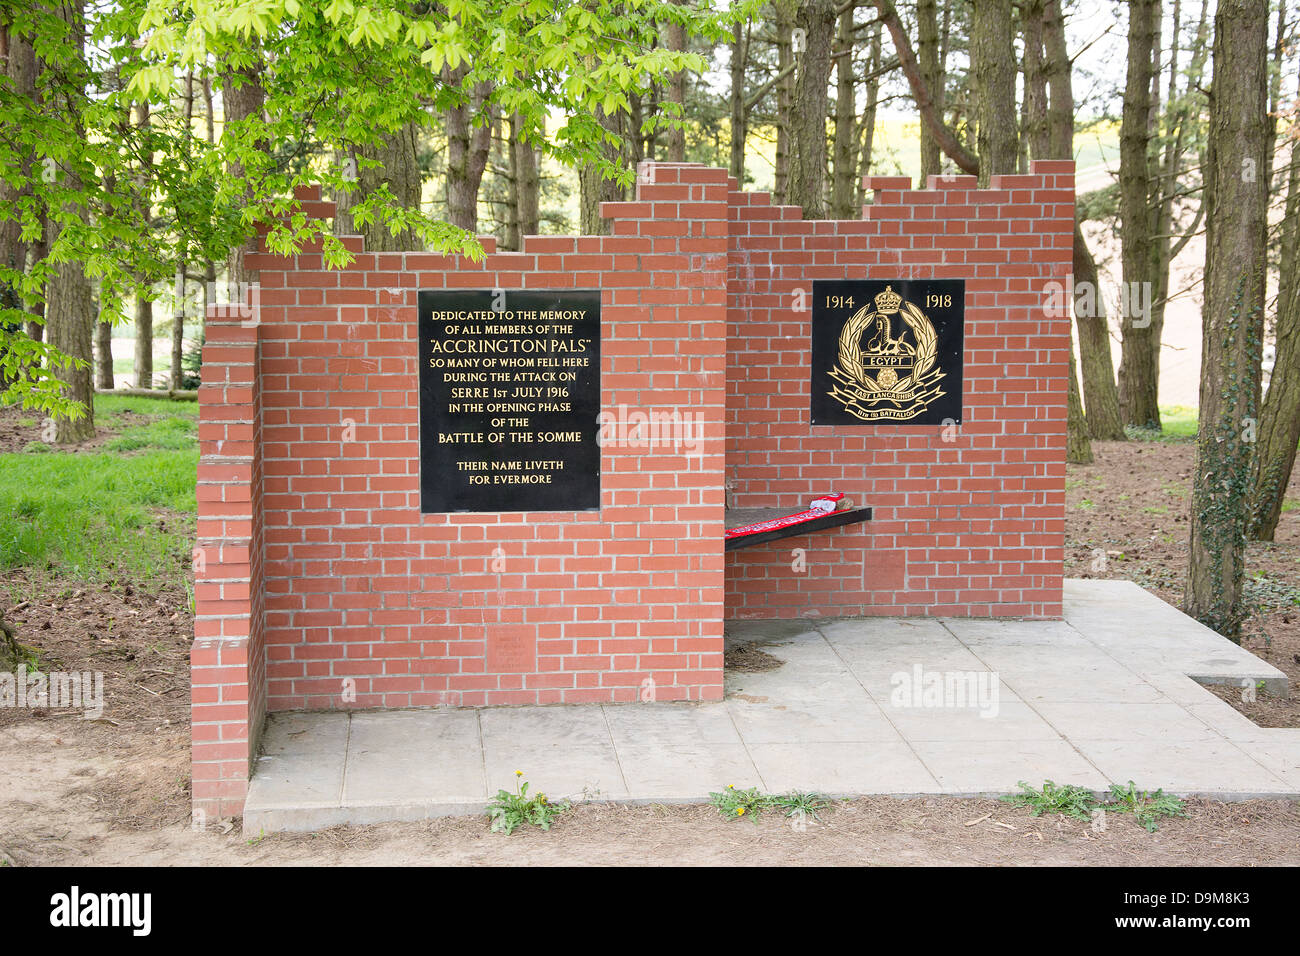 Lapide commemorativa per il Accrington Pals che hanno combattuto a somme WWI Foto Stock